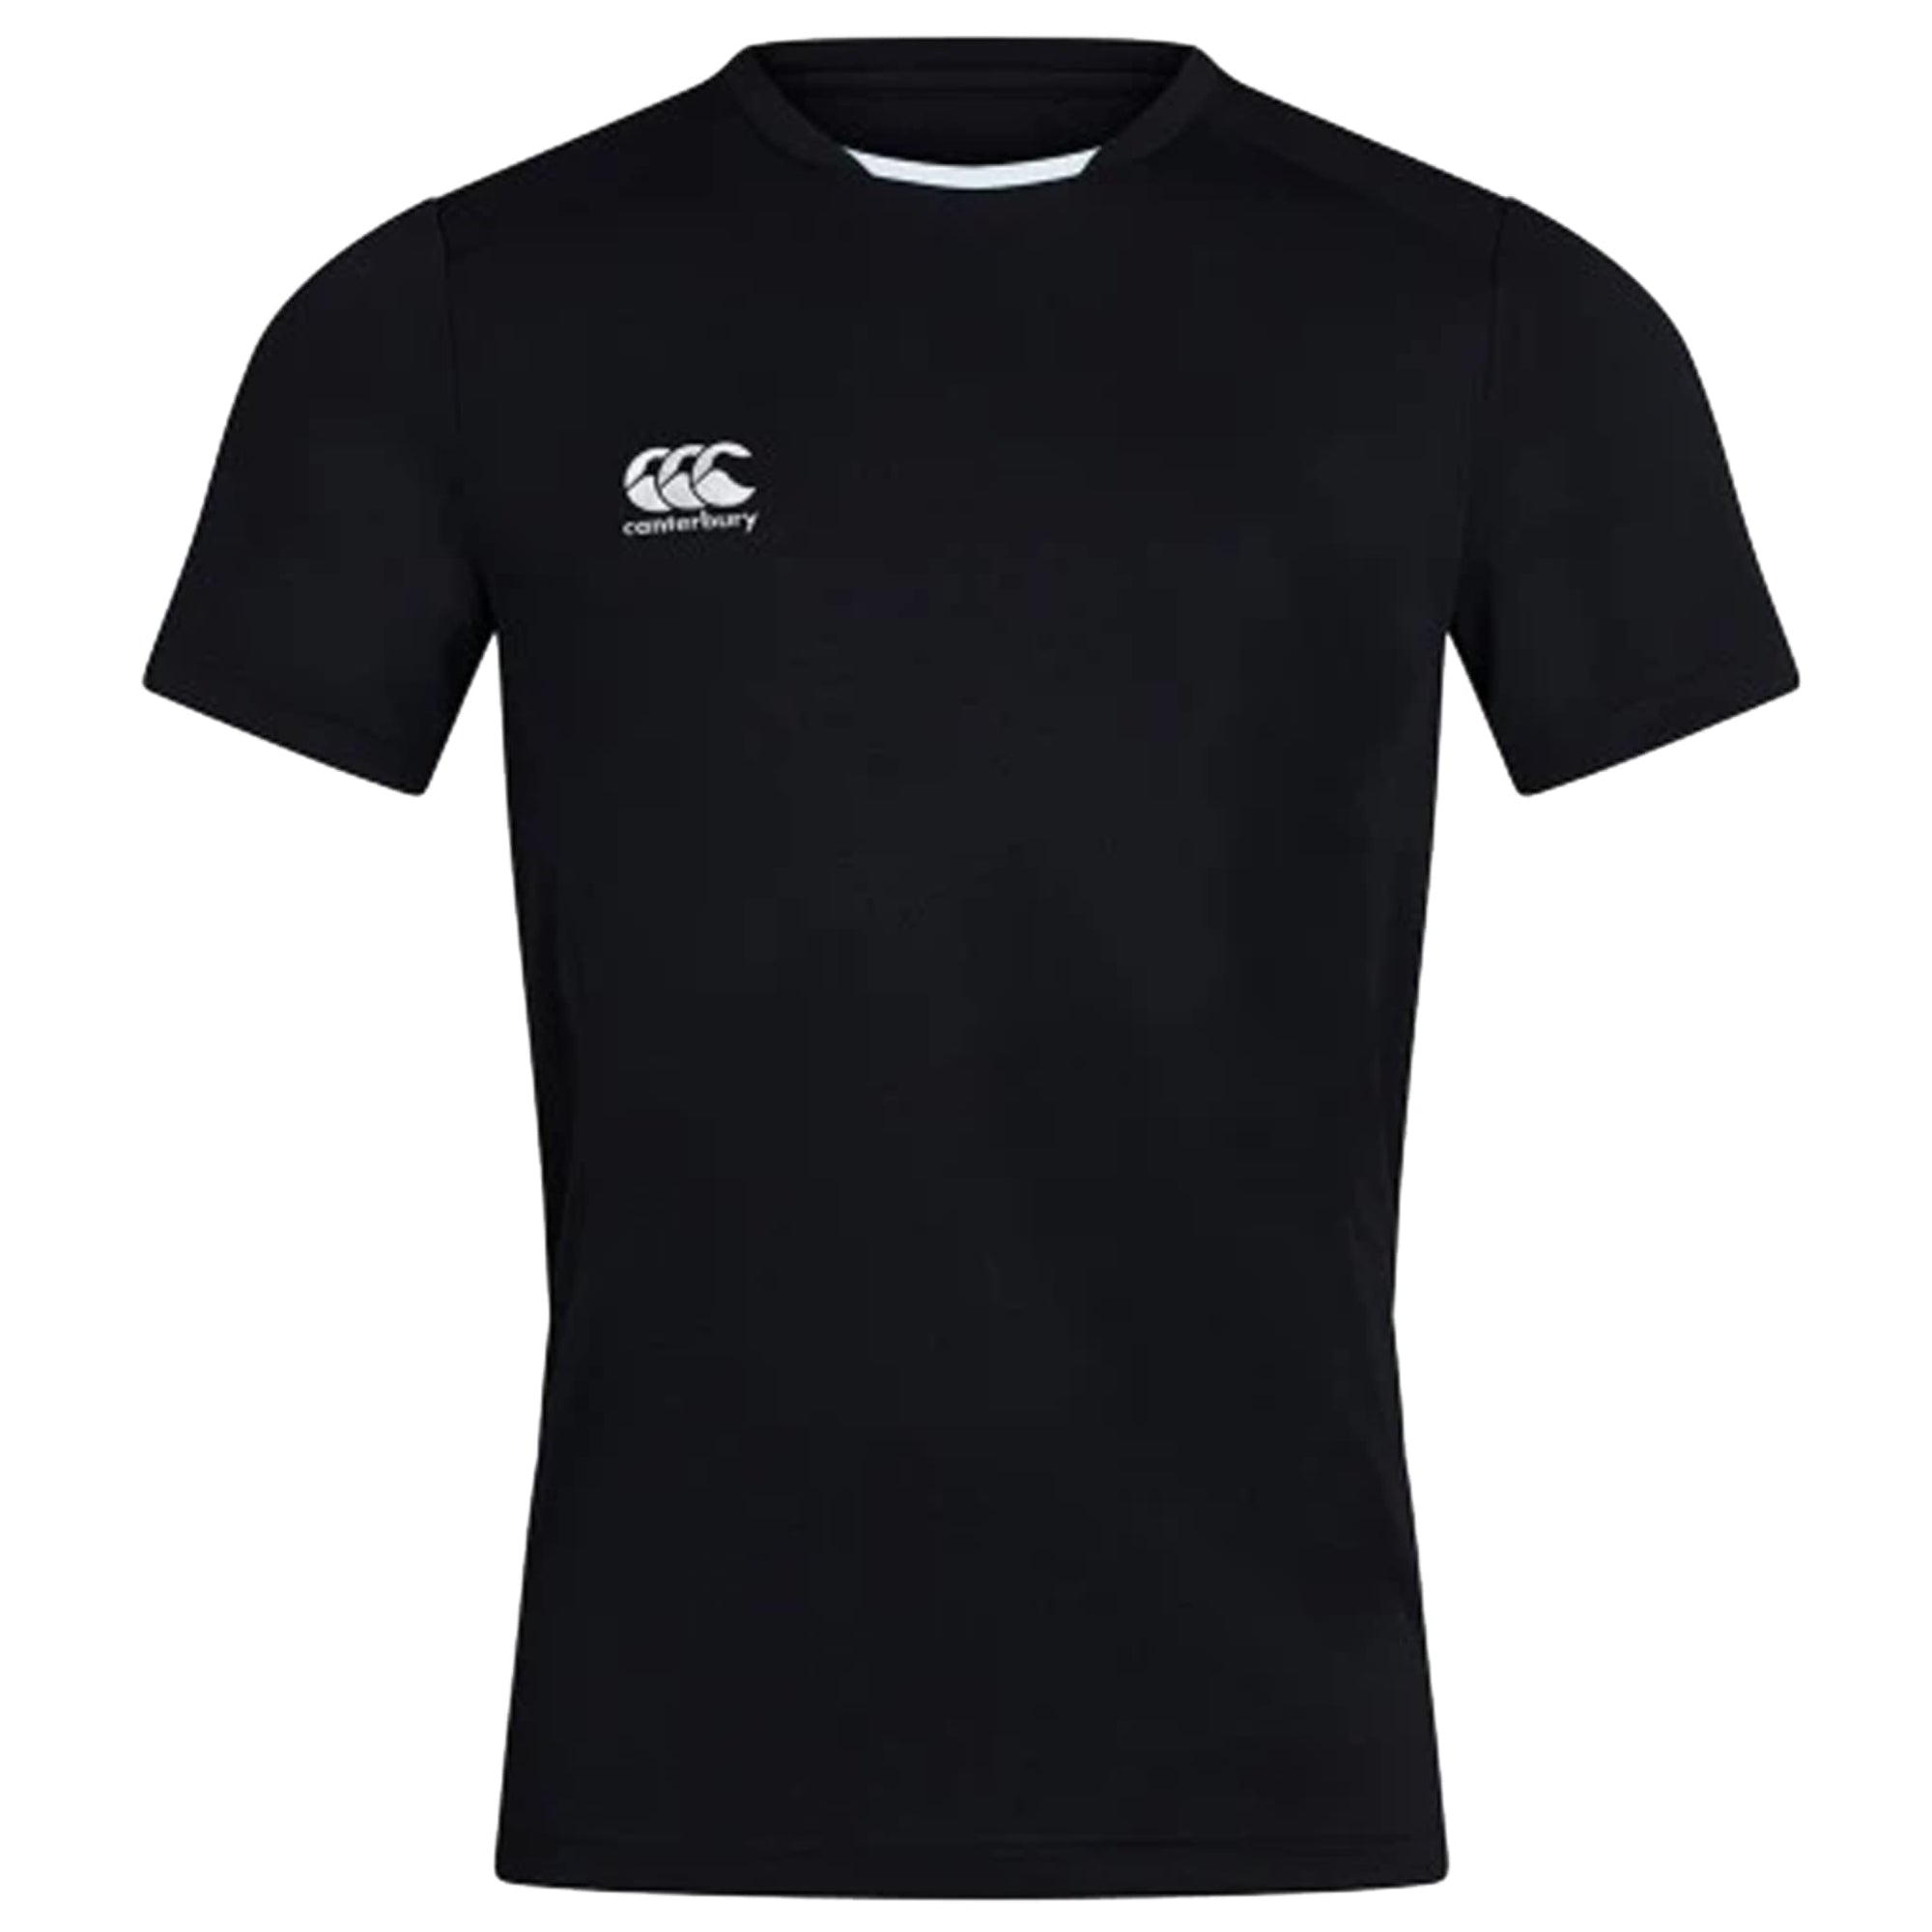 Canterbury CCC Club Dry T-Shirt - Men's/Women's/Youth - Navy